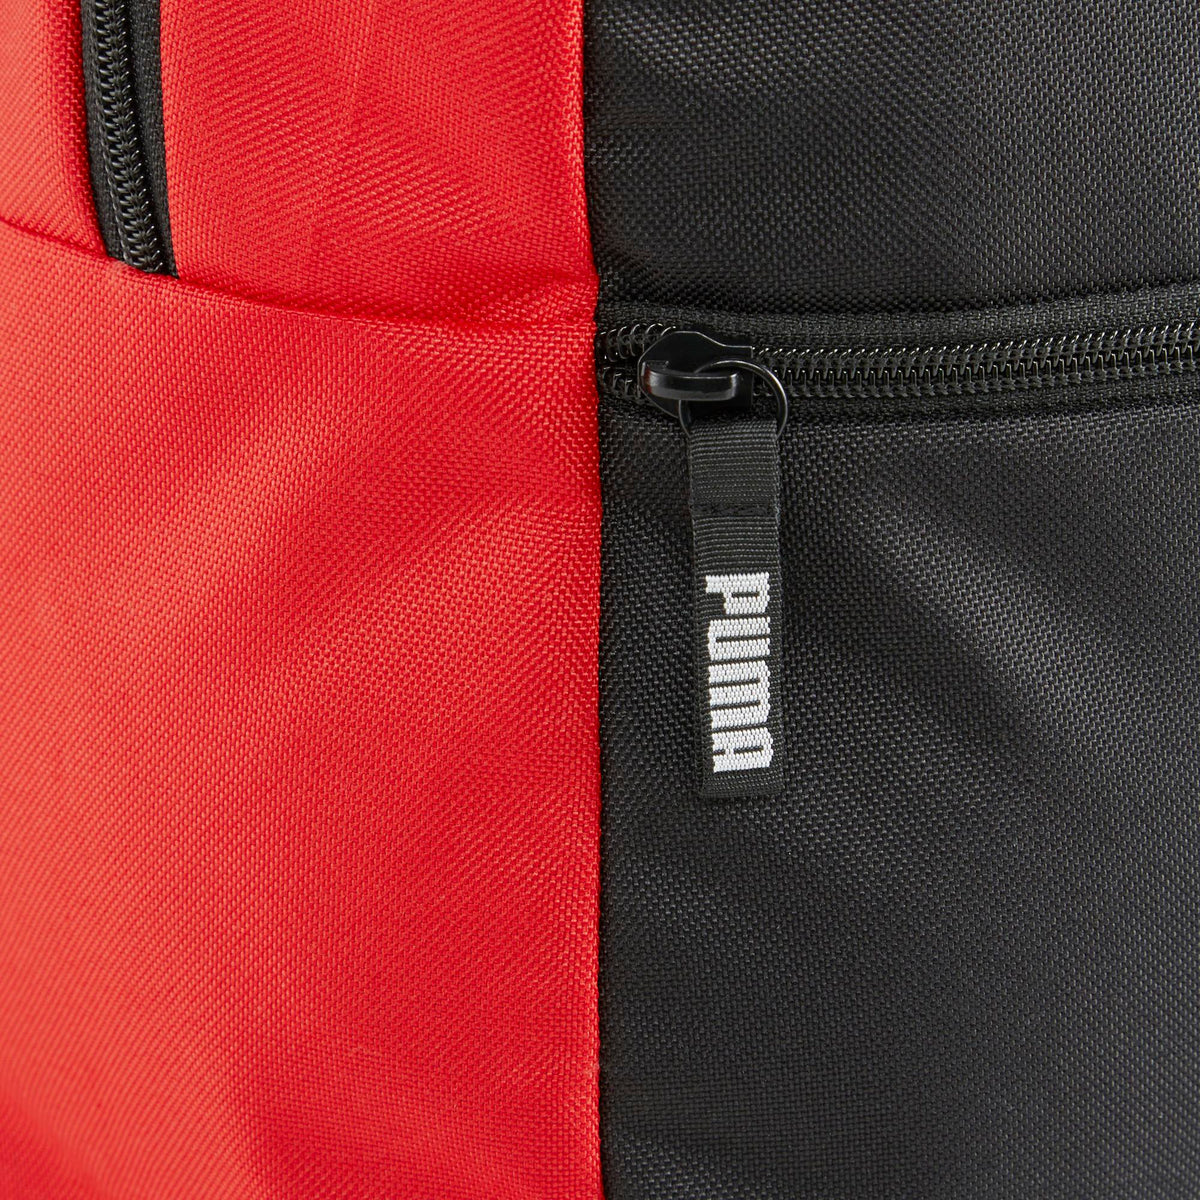 PUMA Backpack Red/Black